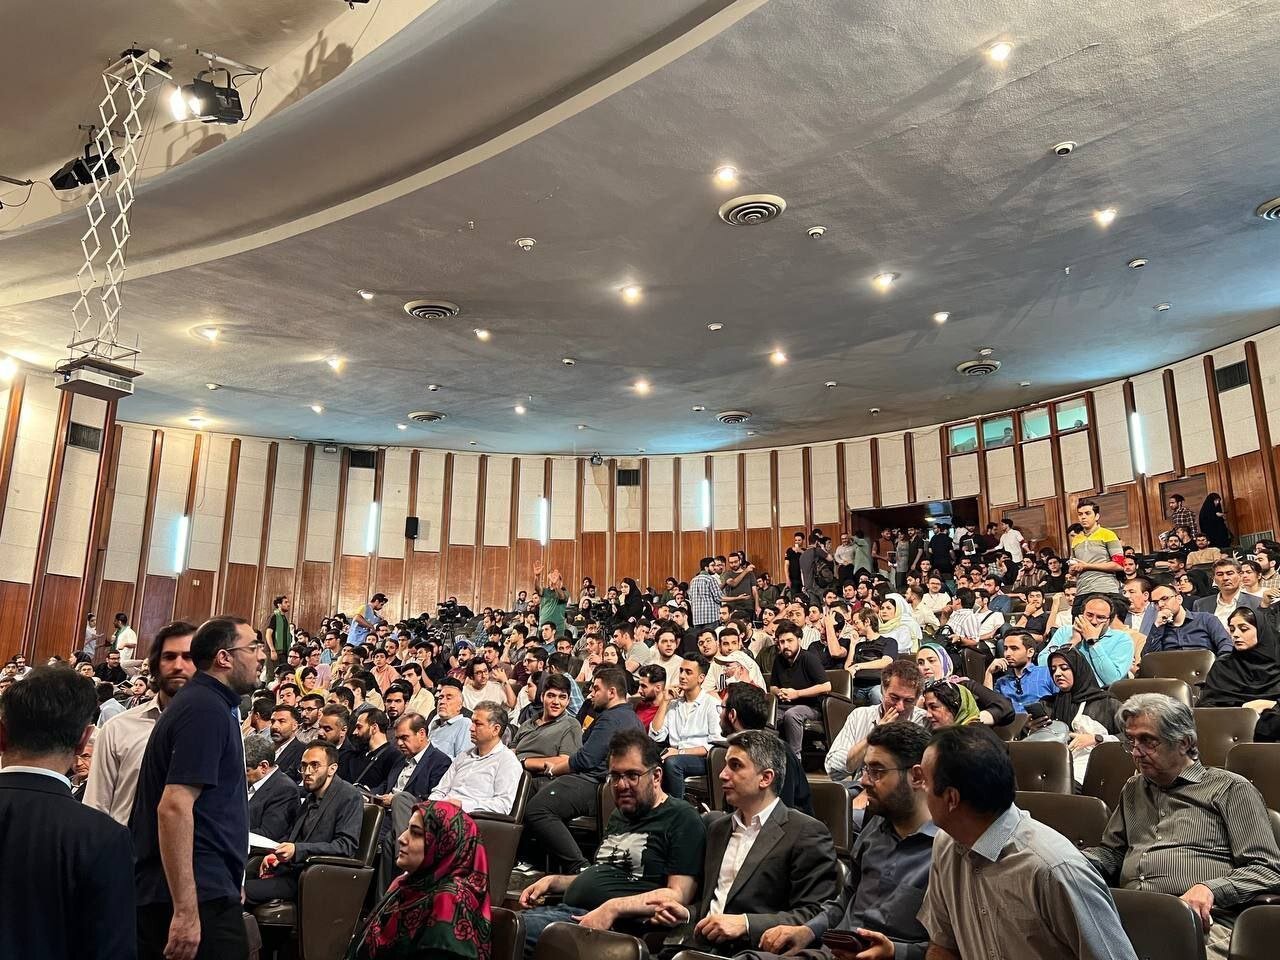 پزشکیان دانشگاه تهران را تکان داد /موج حضور دانشجویان در سالن سخنرانی +عکس